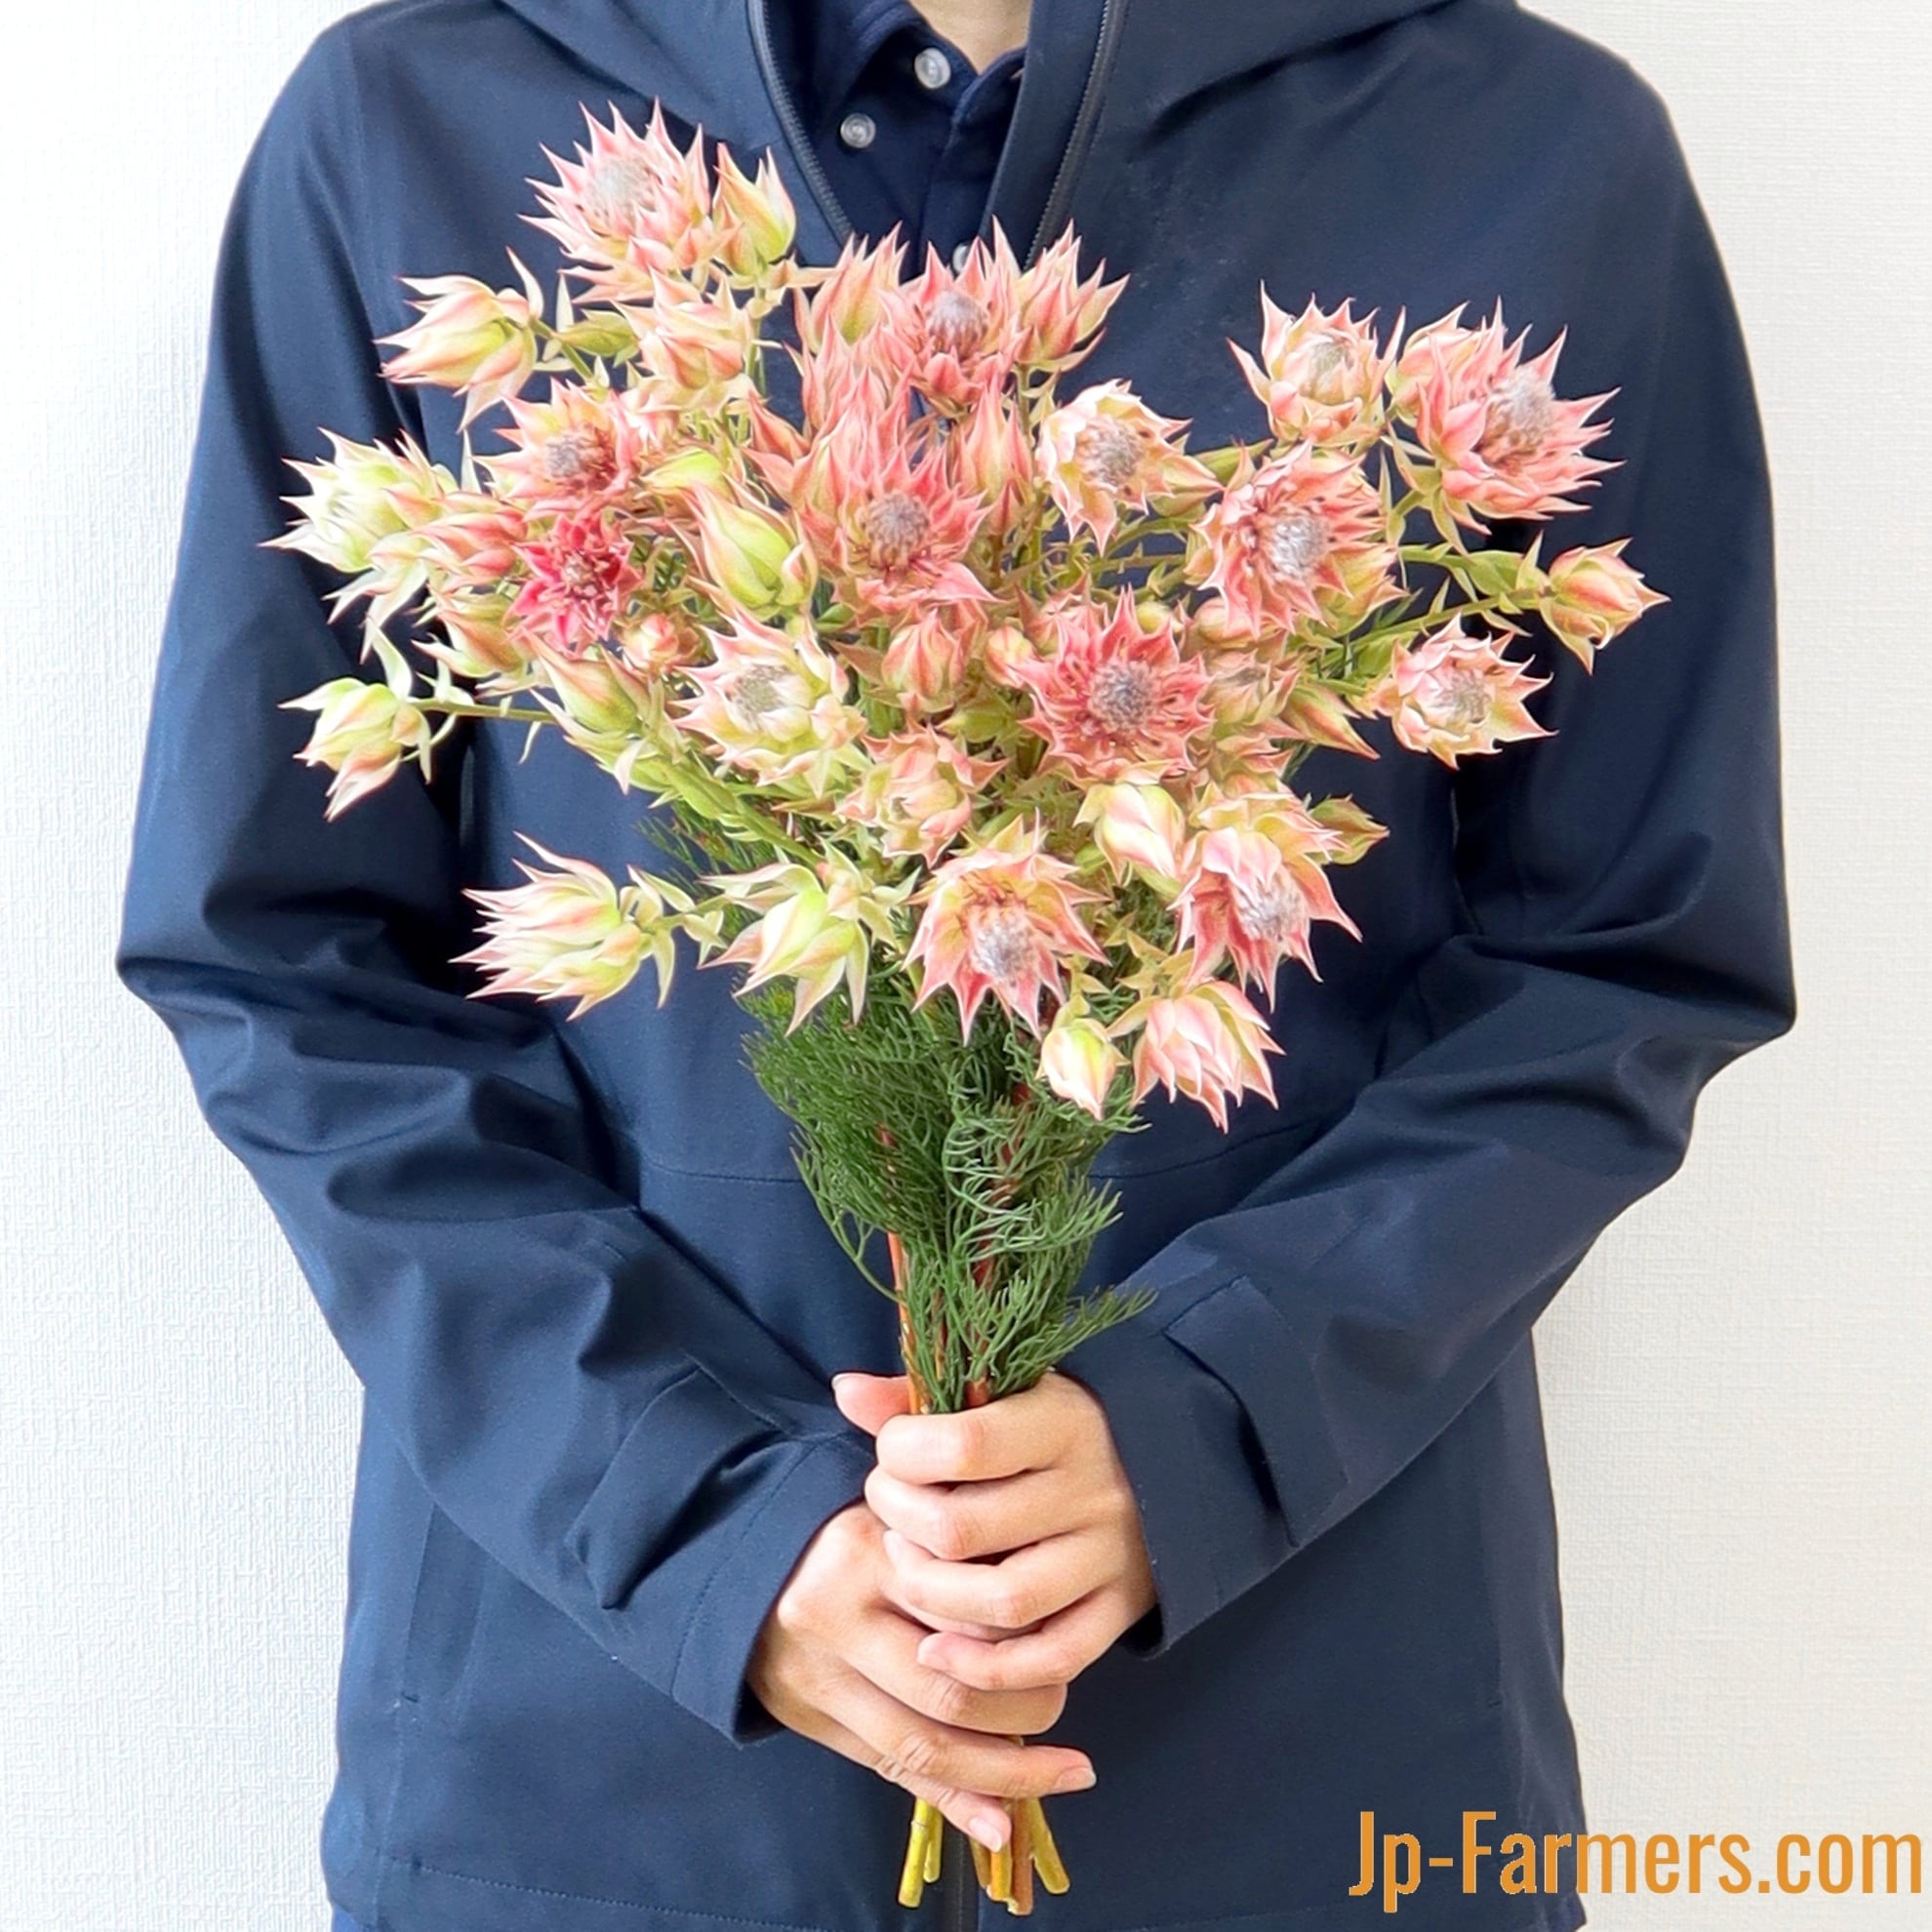 可愛い系 ネイティブフラワー セルリア ブラッシングブライドピンク 新鮮花の問屋 Jp Farmers Com